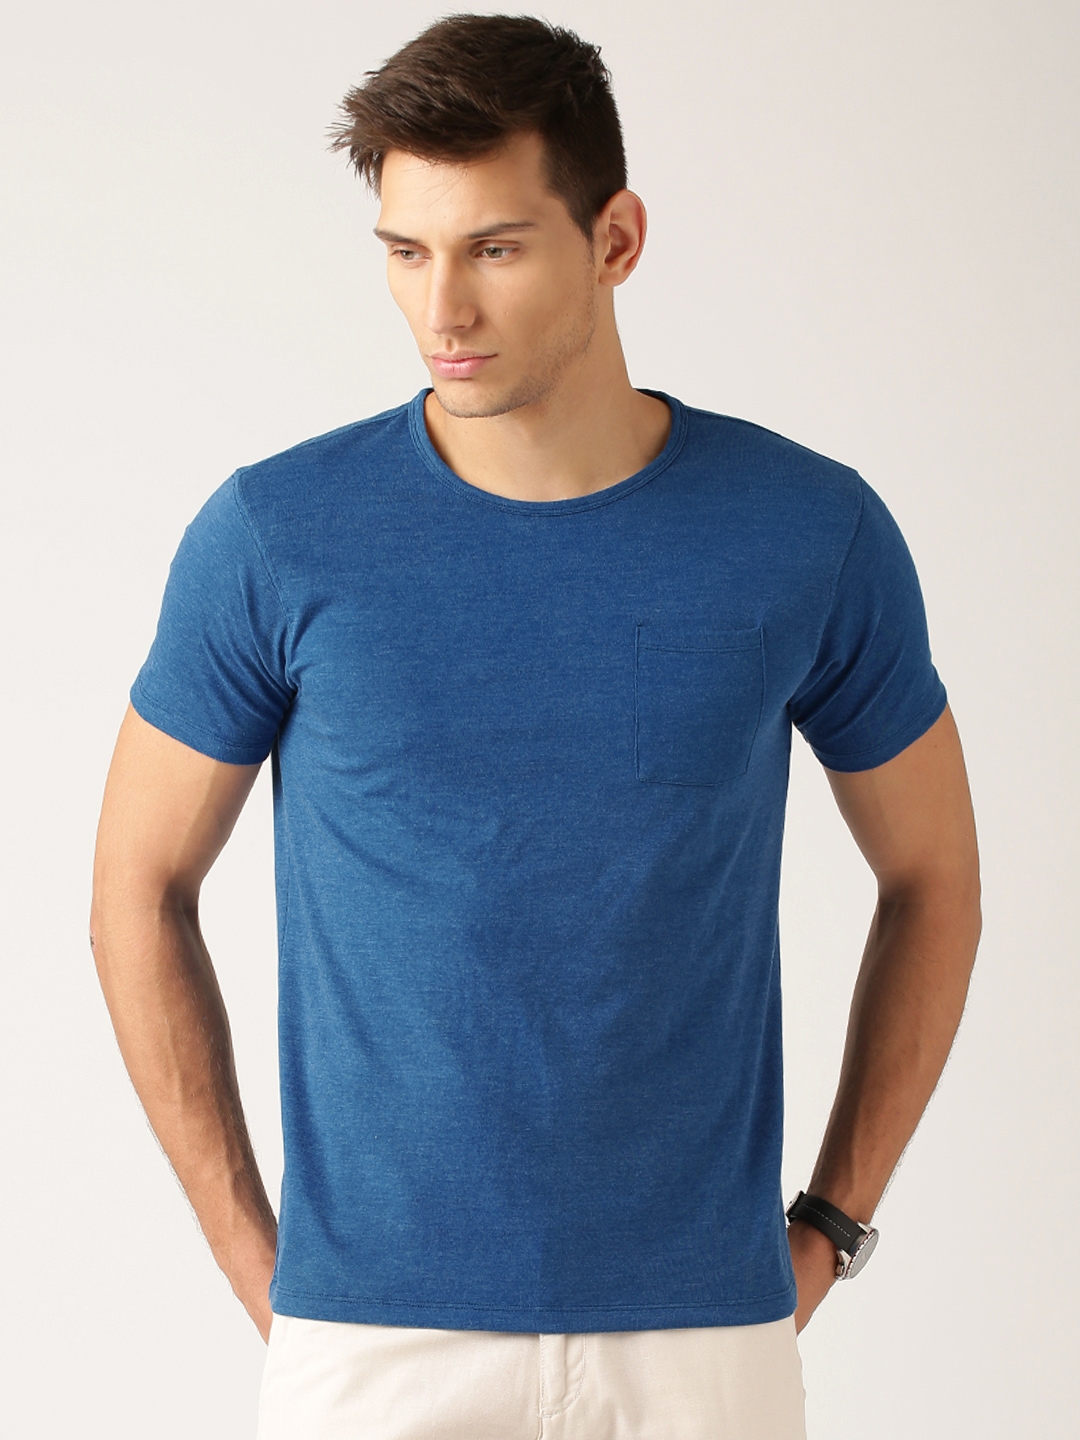 Buy ETHER Men Blue Slim Fit Solid Round Neck T Shirt -  - Apparel for Men